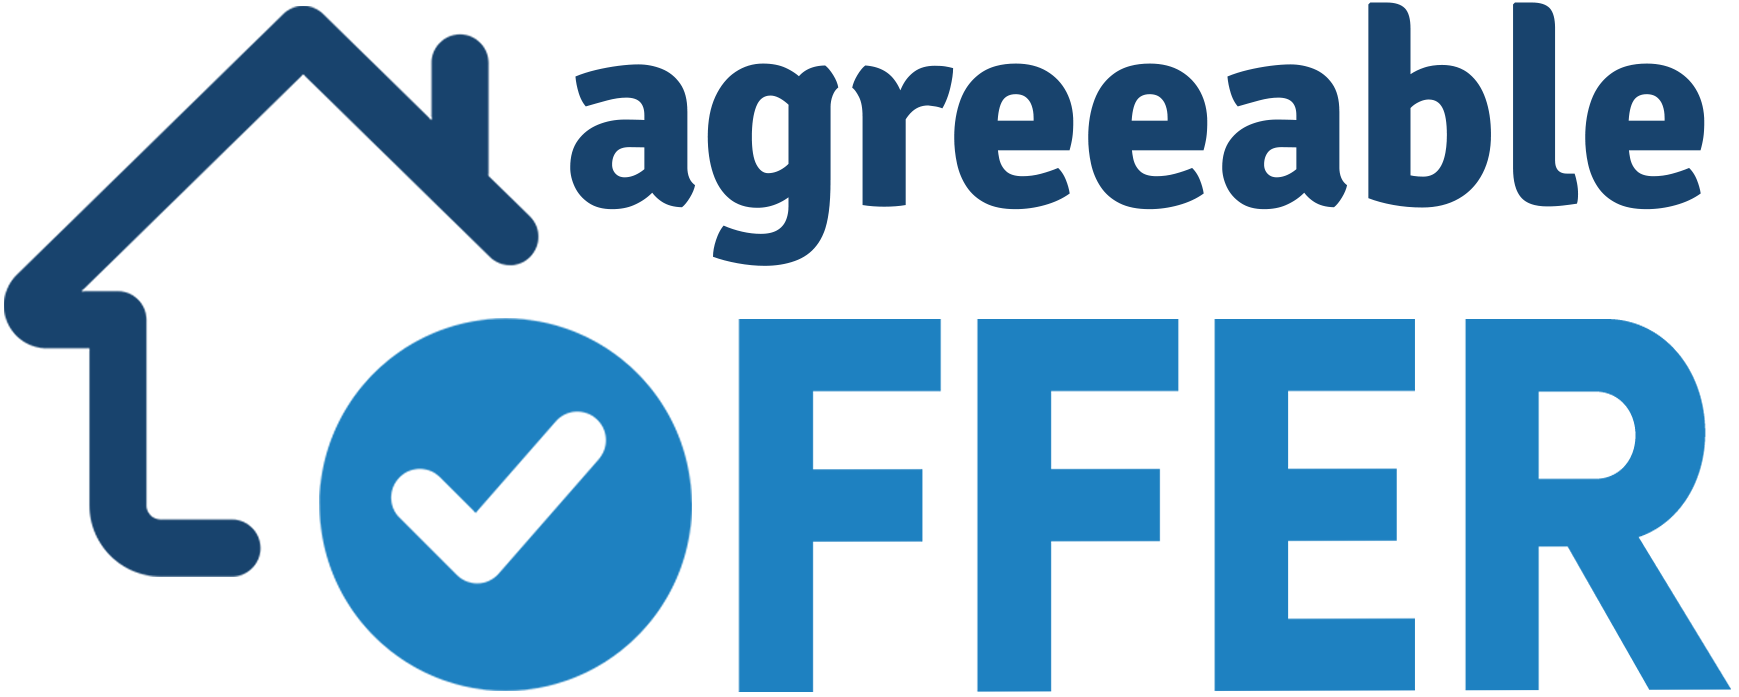 Agreeable Offer logo